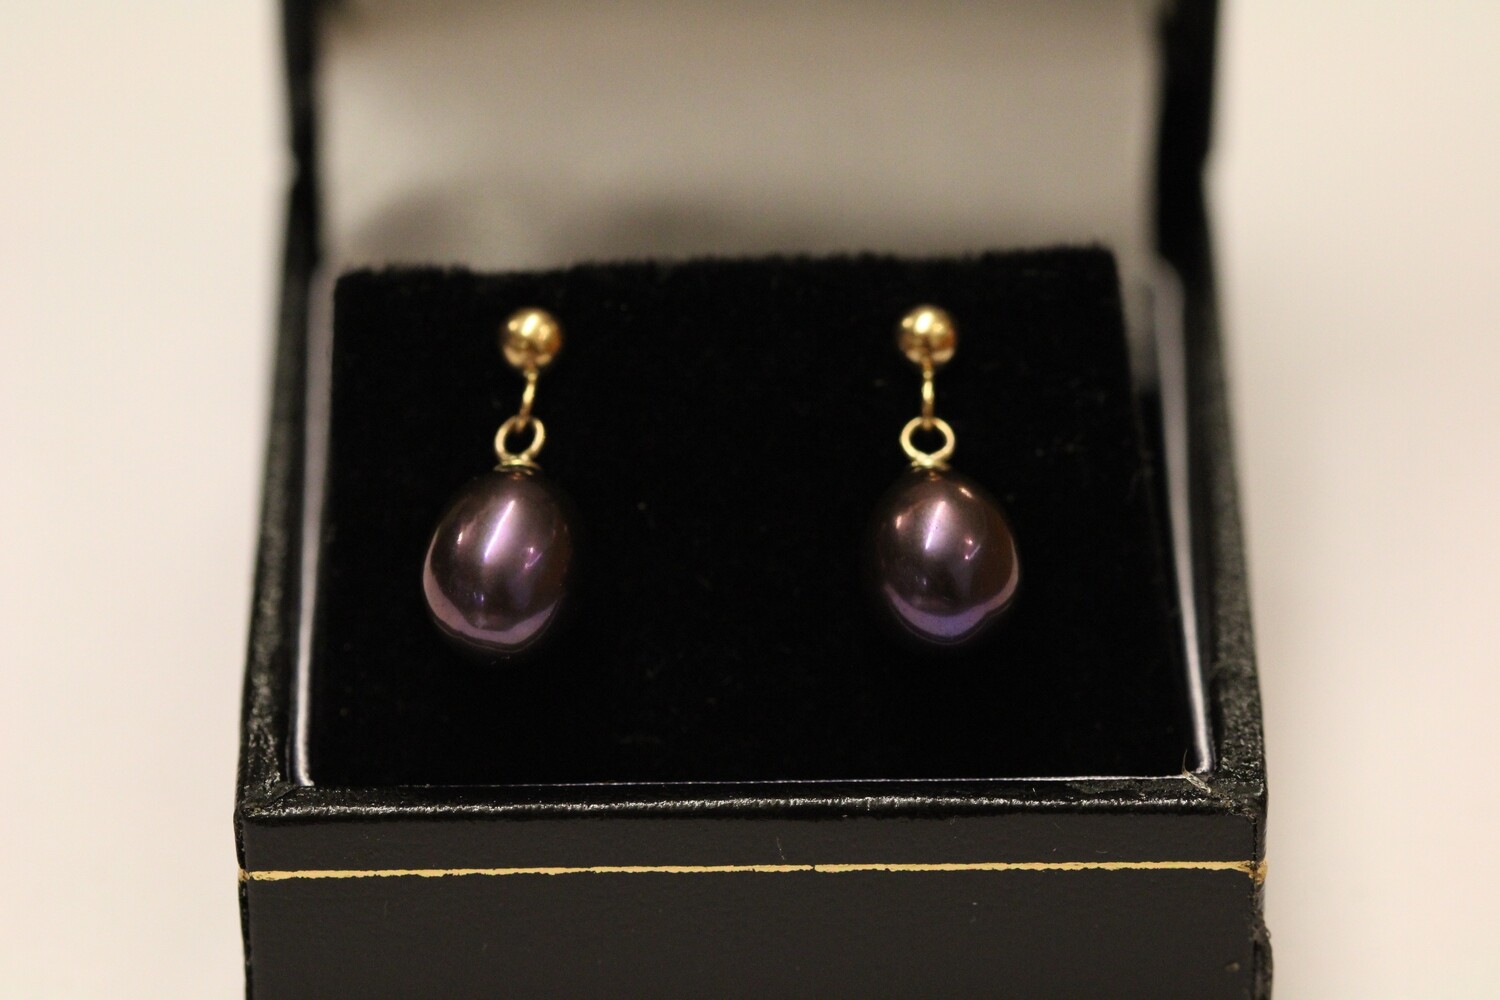 earrings pretty purple pearls